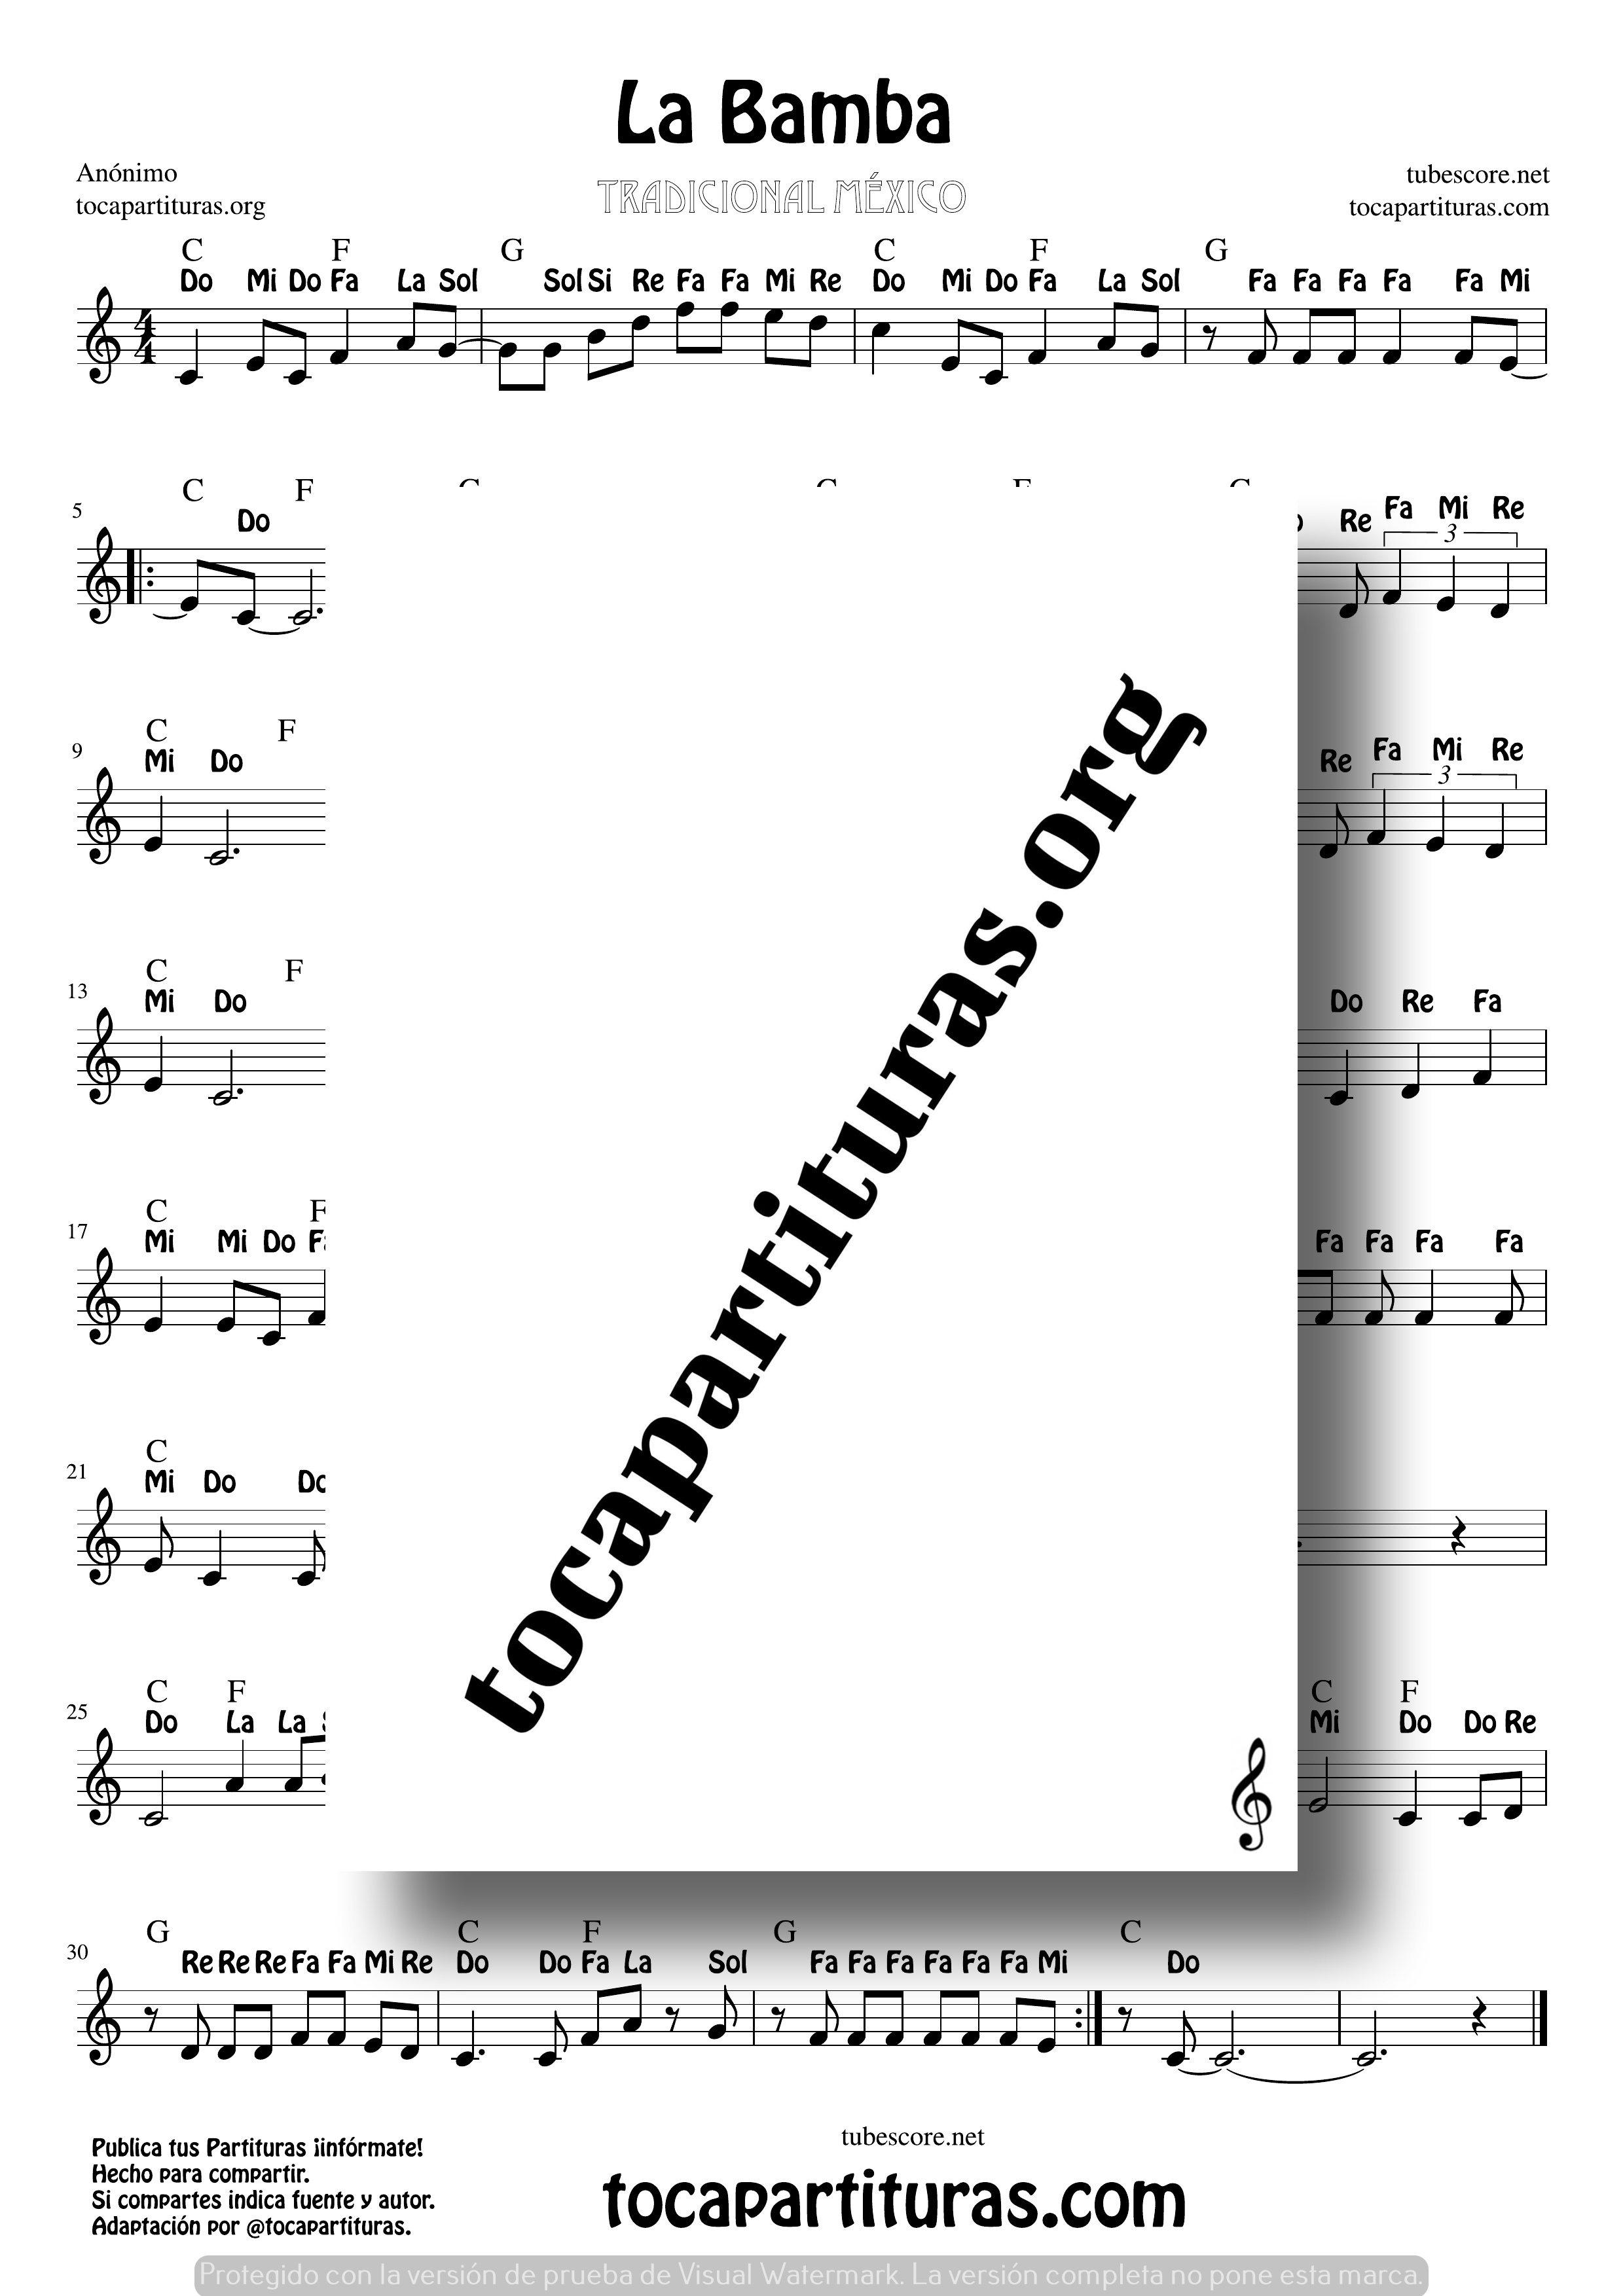 La Bamba Partitura con Notas en letras de Flauta violin oboe Sheet Music for flute